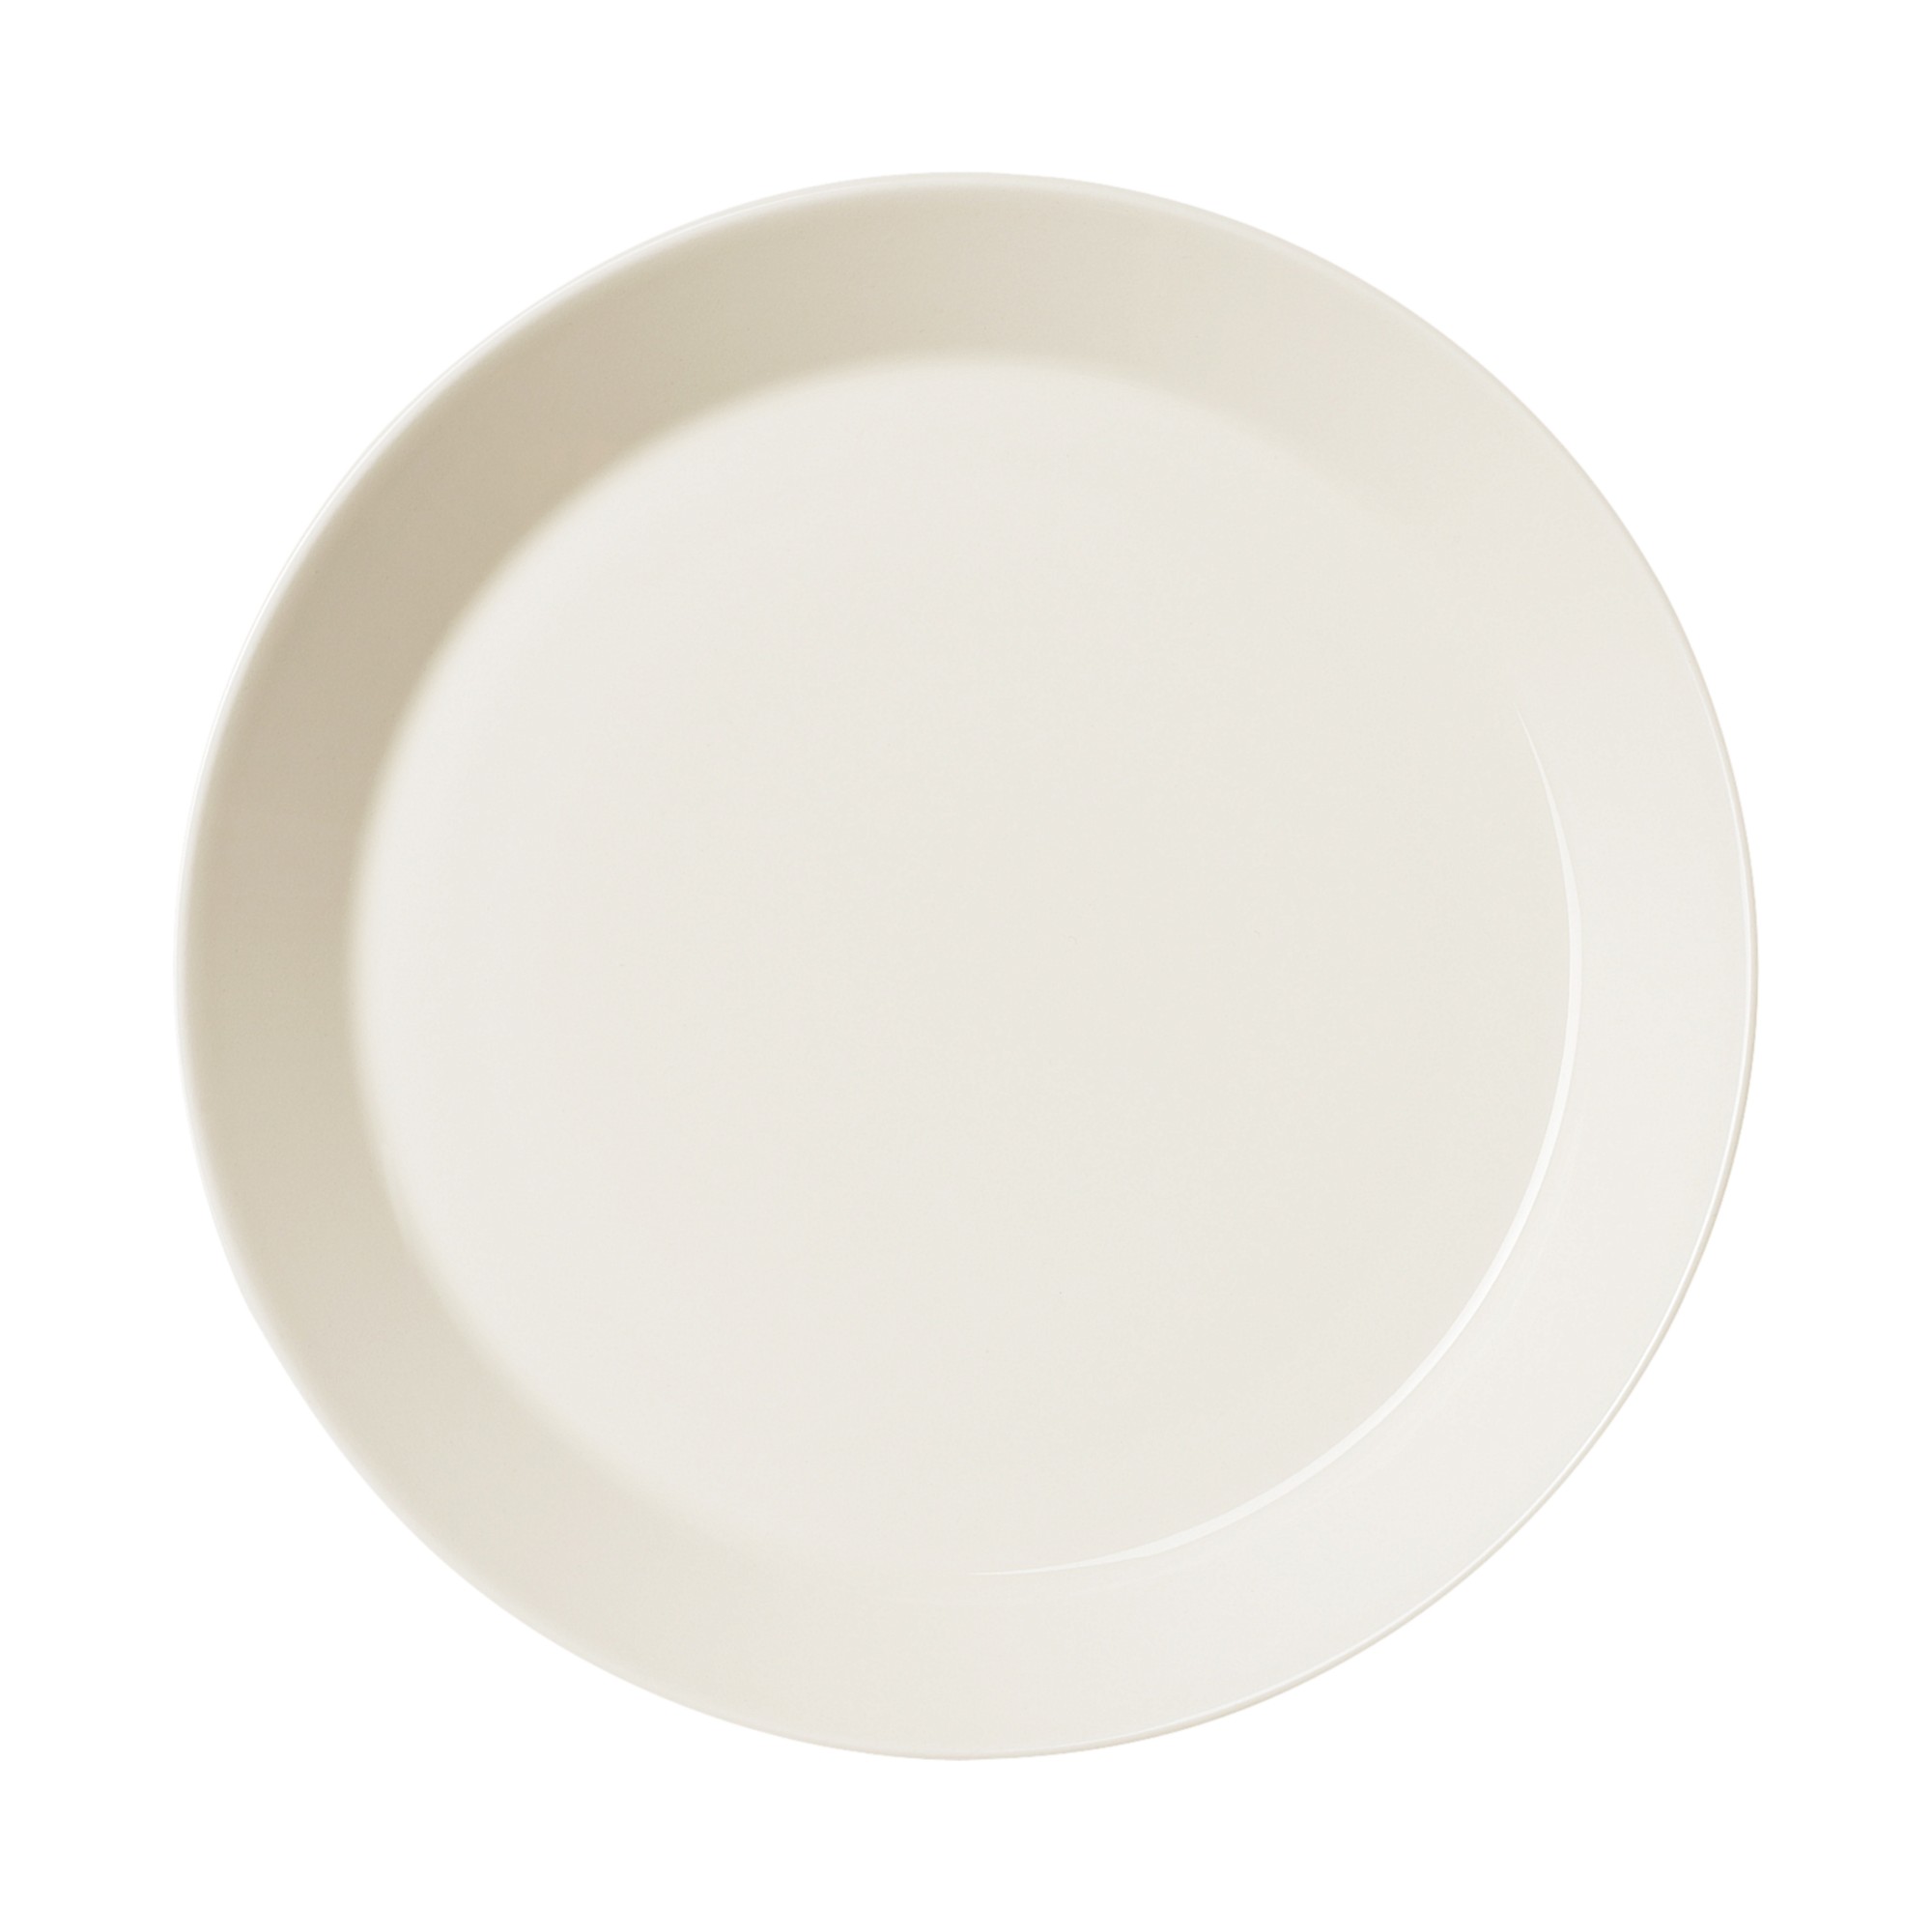 Teema 접시 26cm 흰색